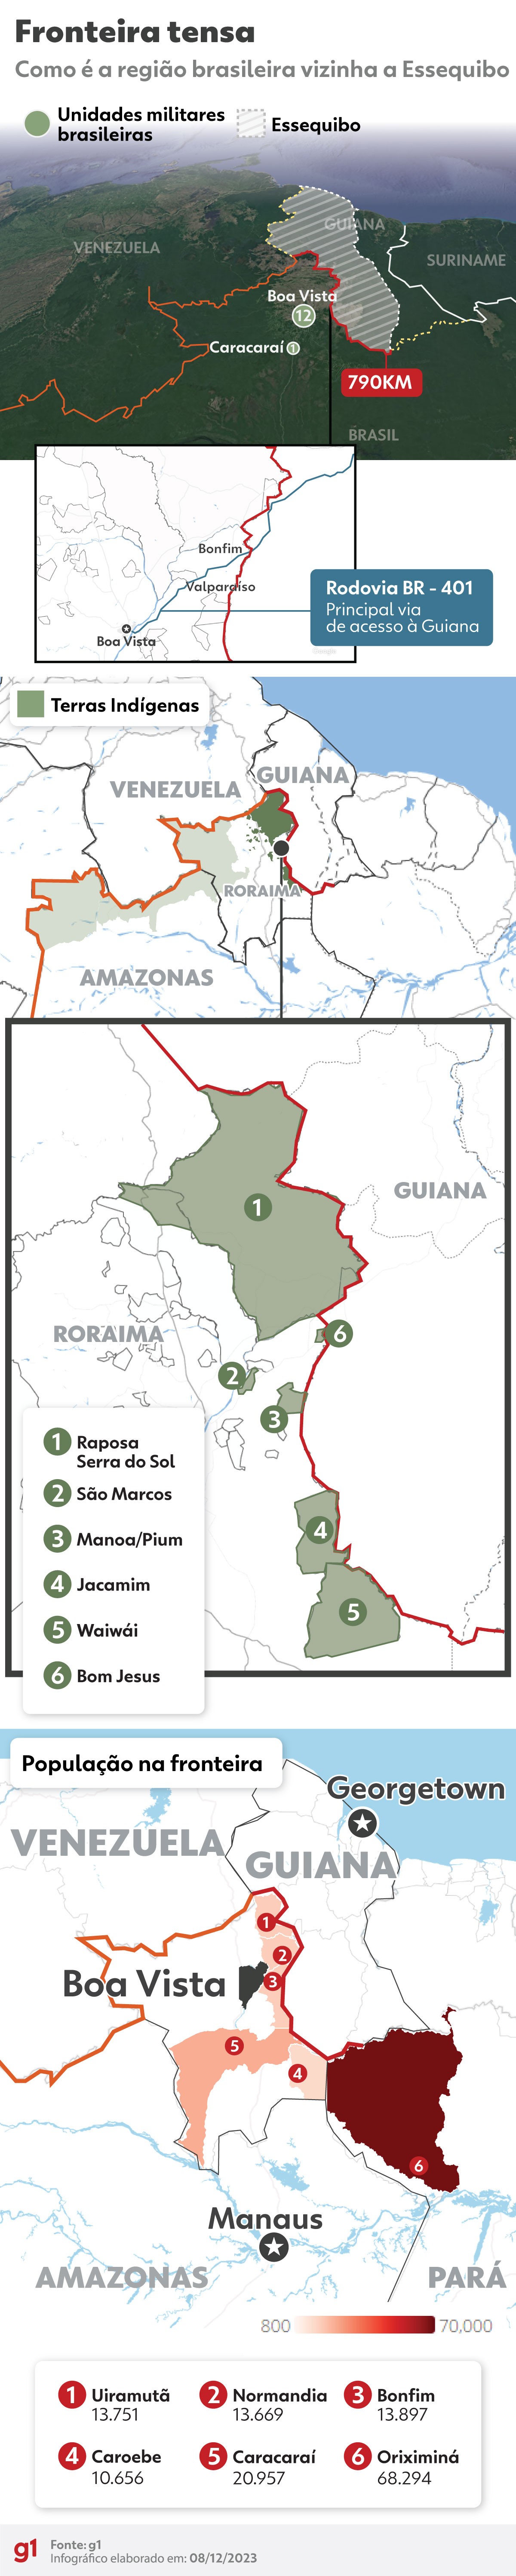 Infografía: Cómo luce la frontera entre Brasil y Esequibo, una región de Guyana codiciada por Venezuela |  Roraima